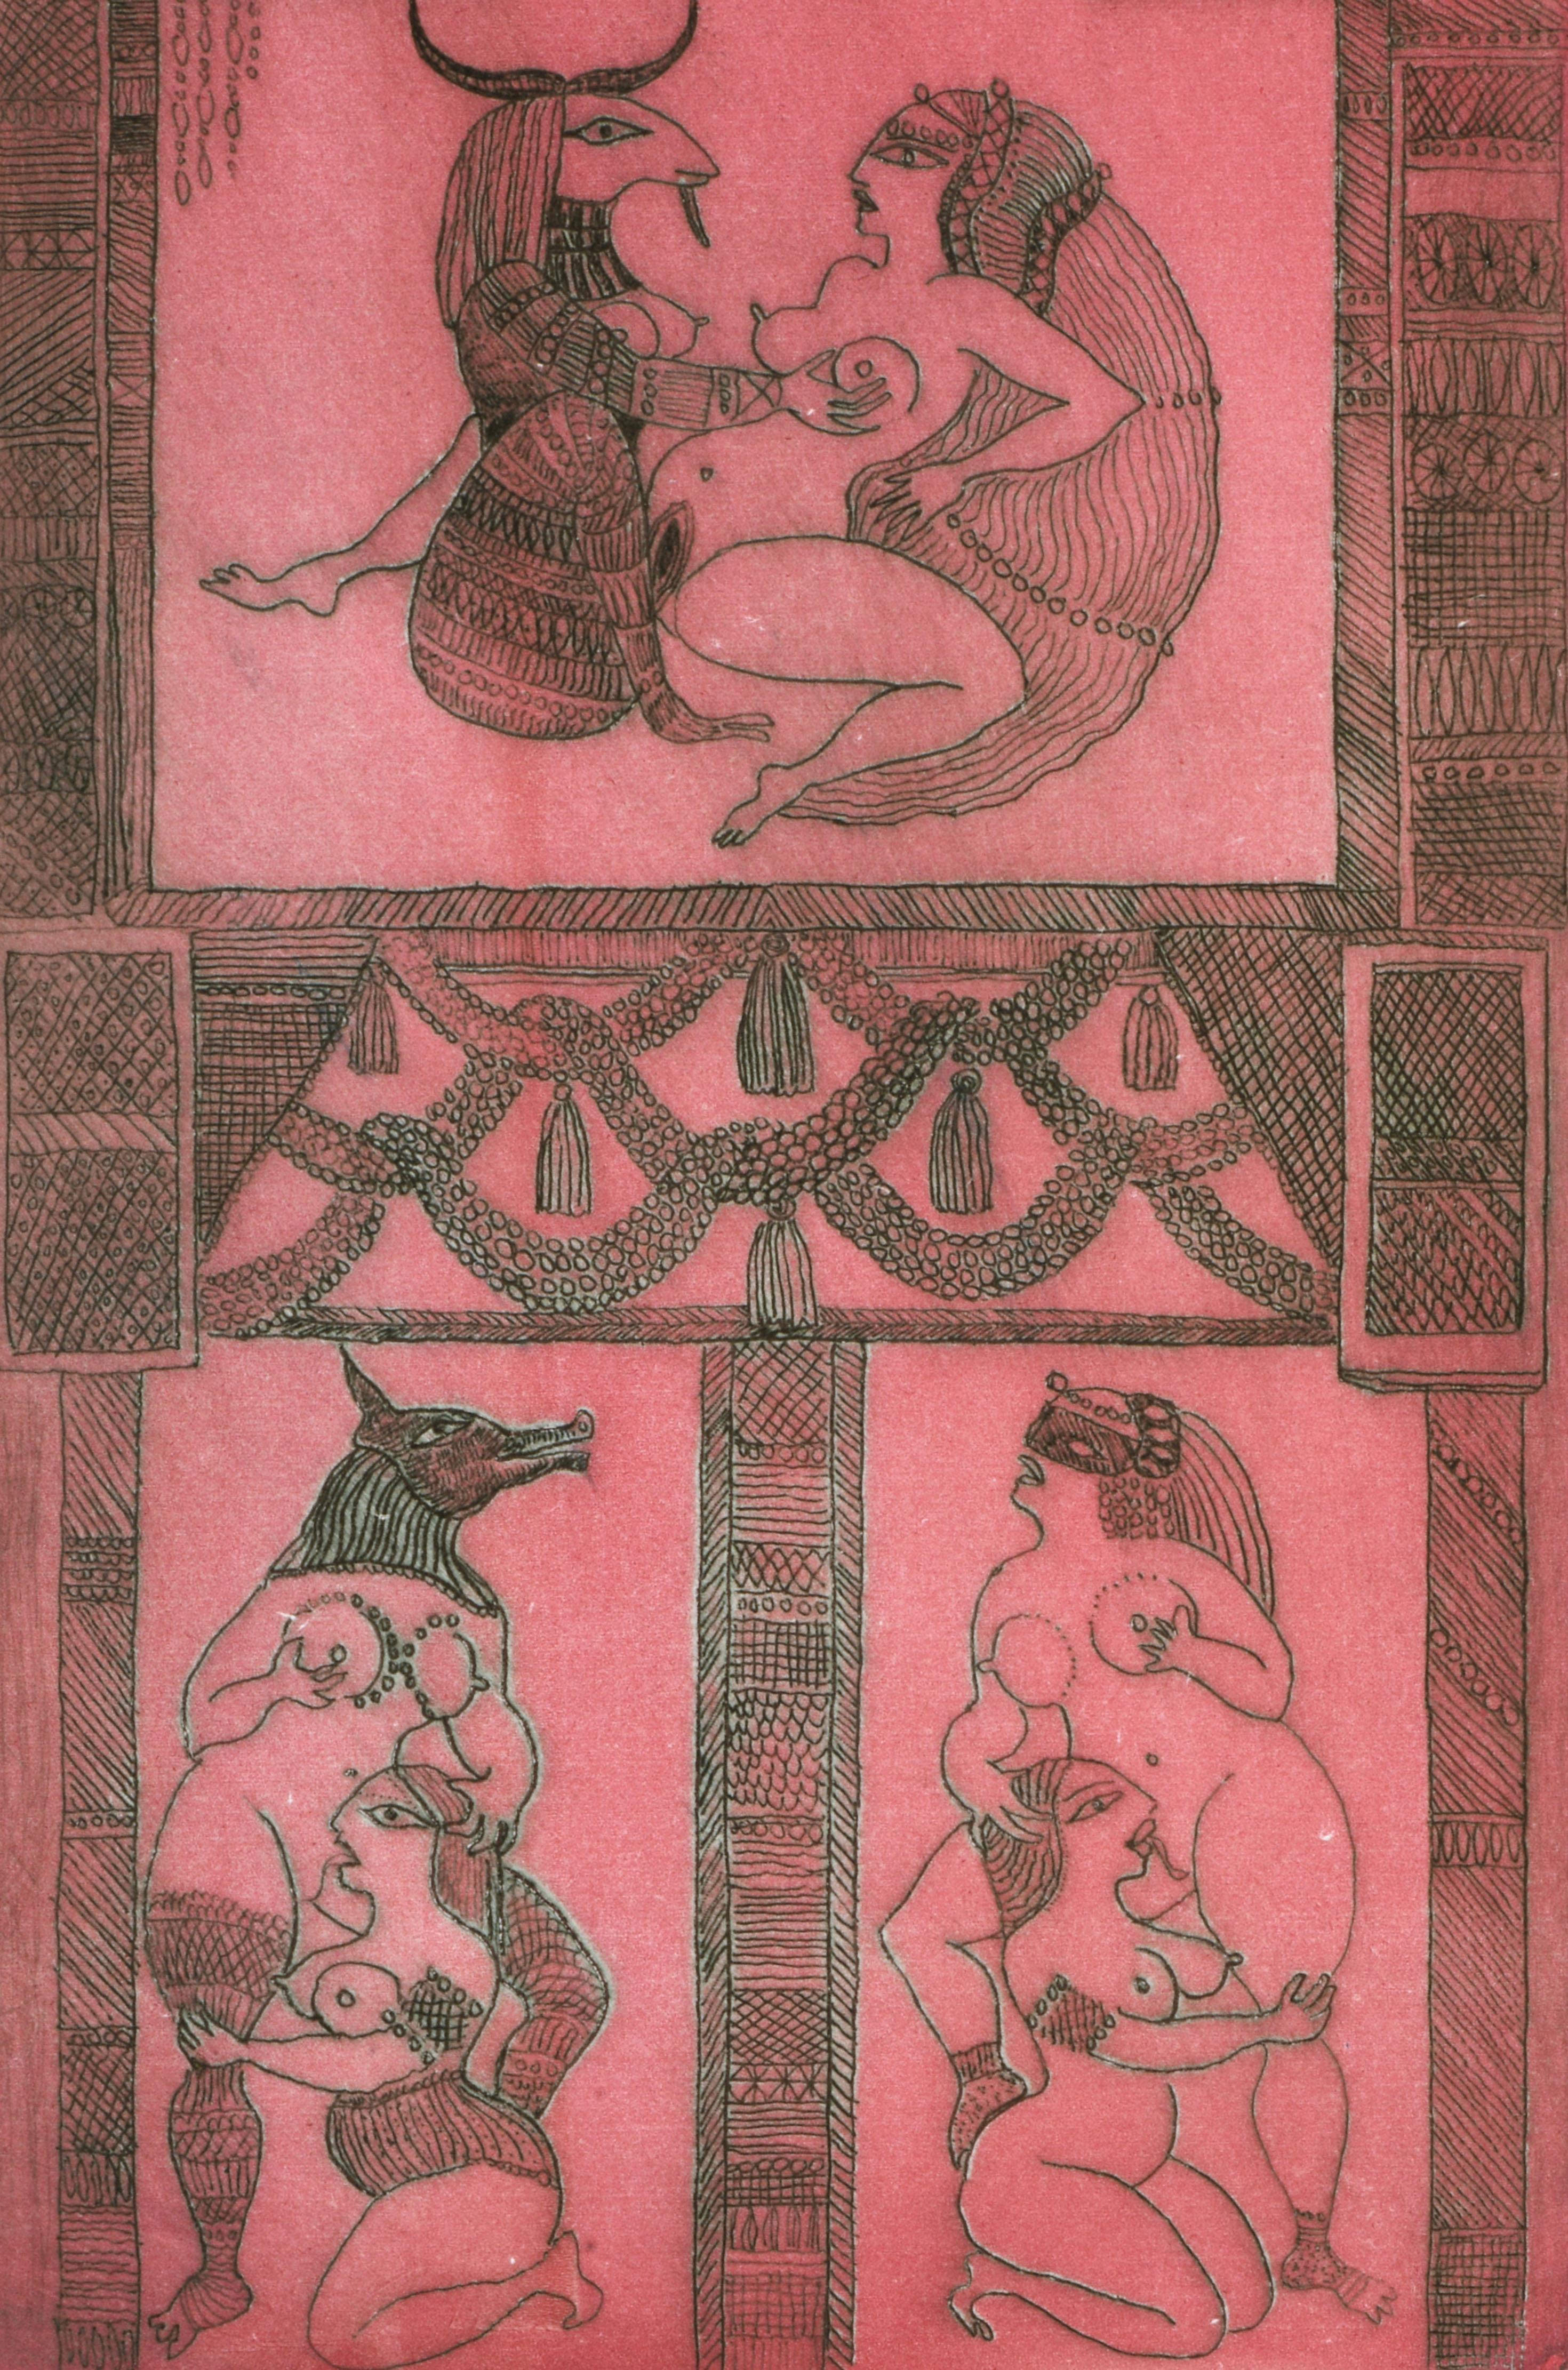 Women Loving Woomen (Pink), Animal Print, von Noche Crist